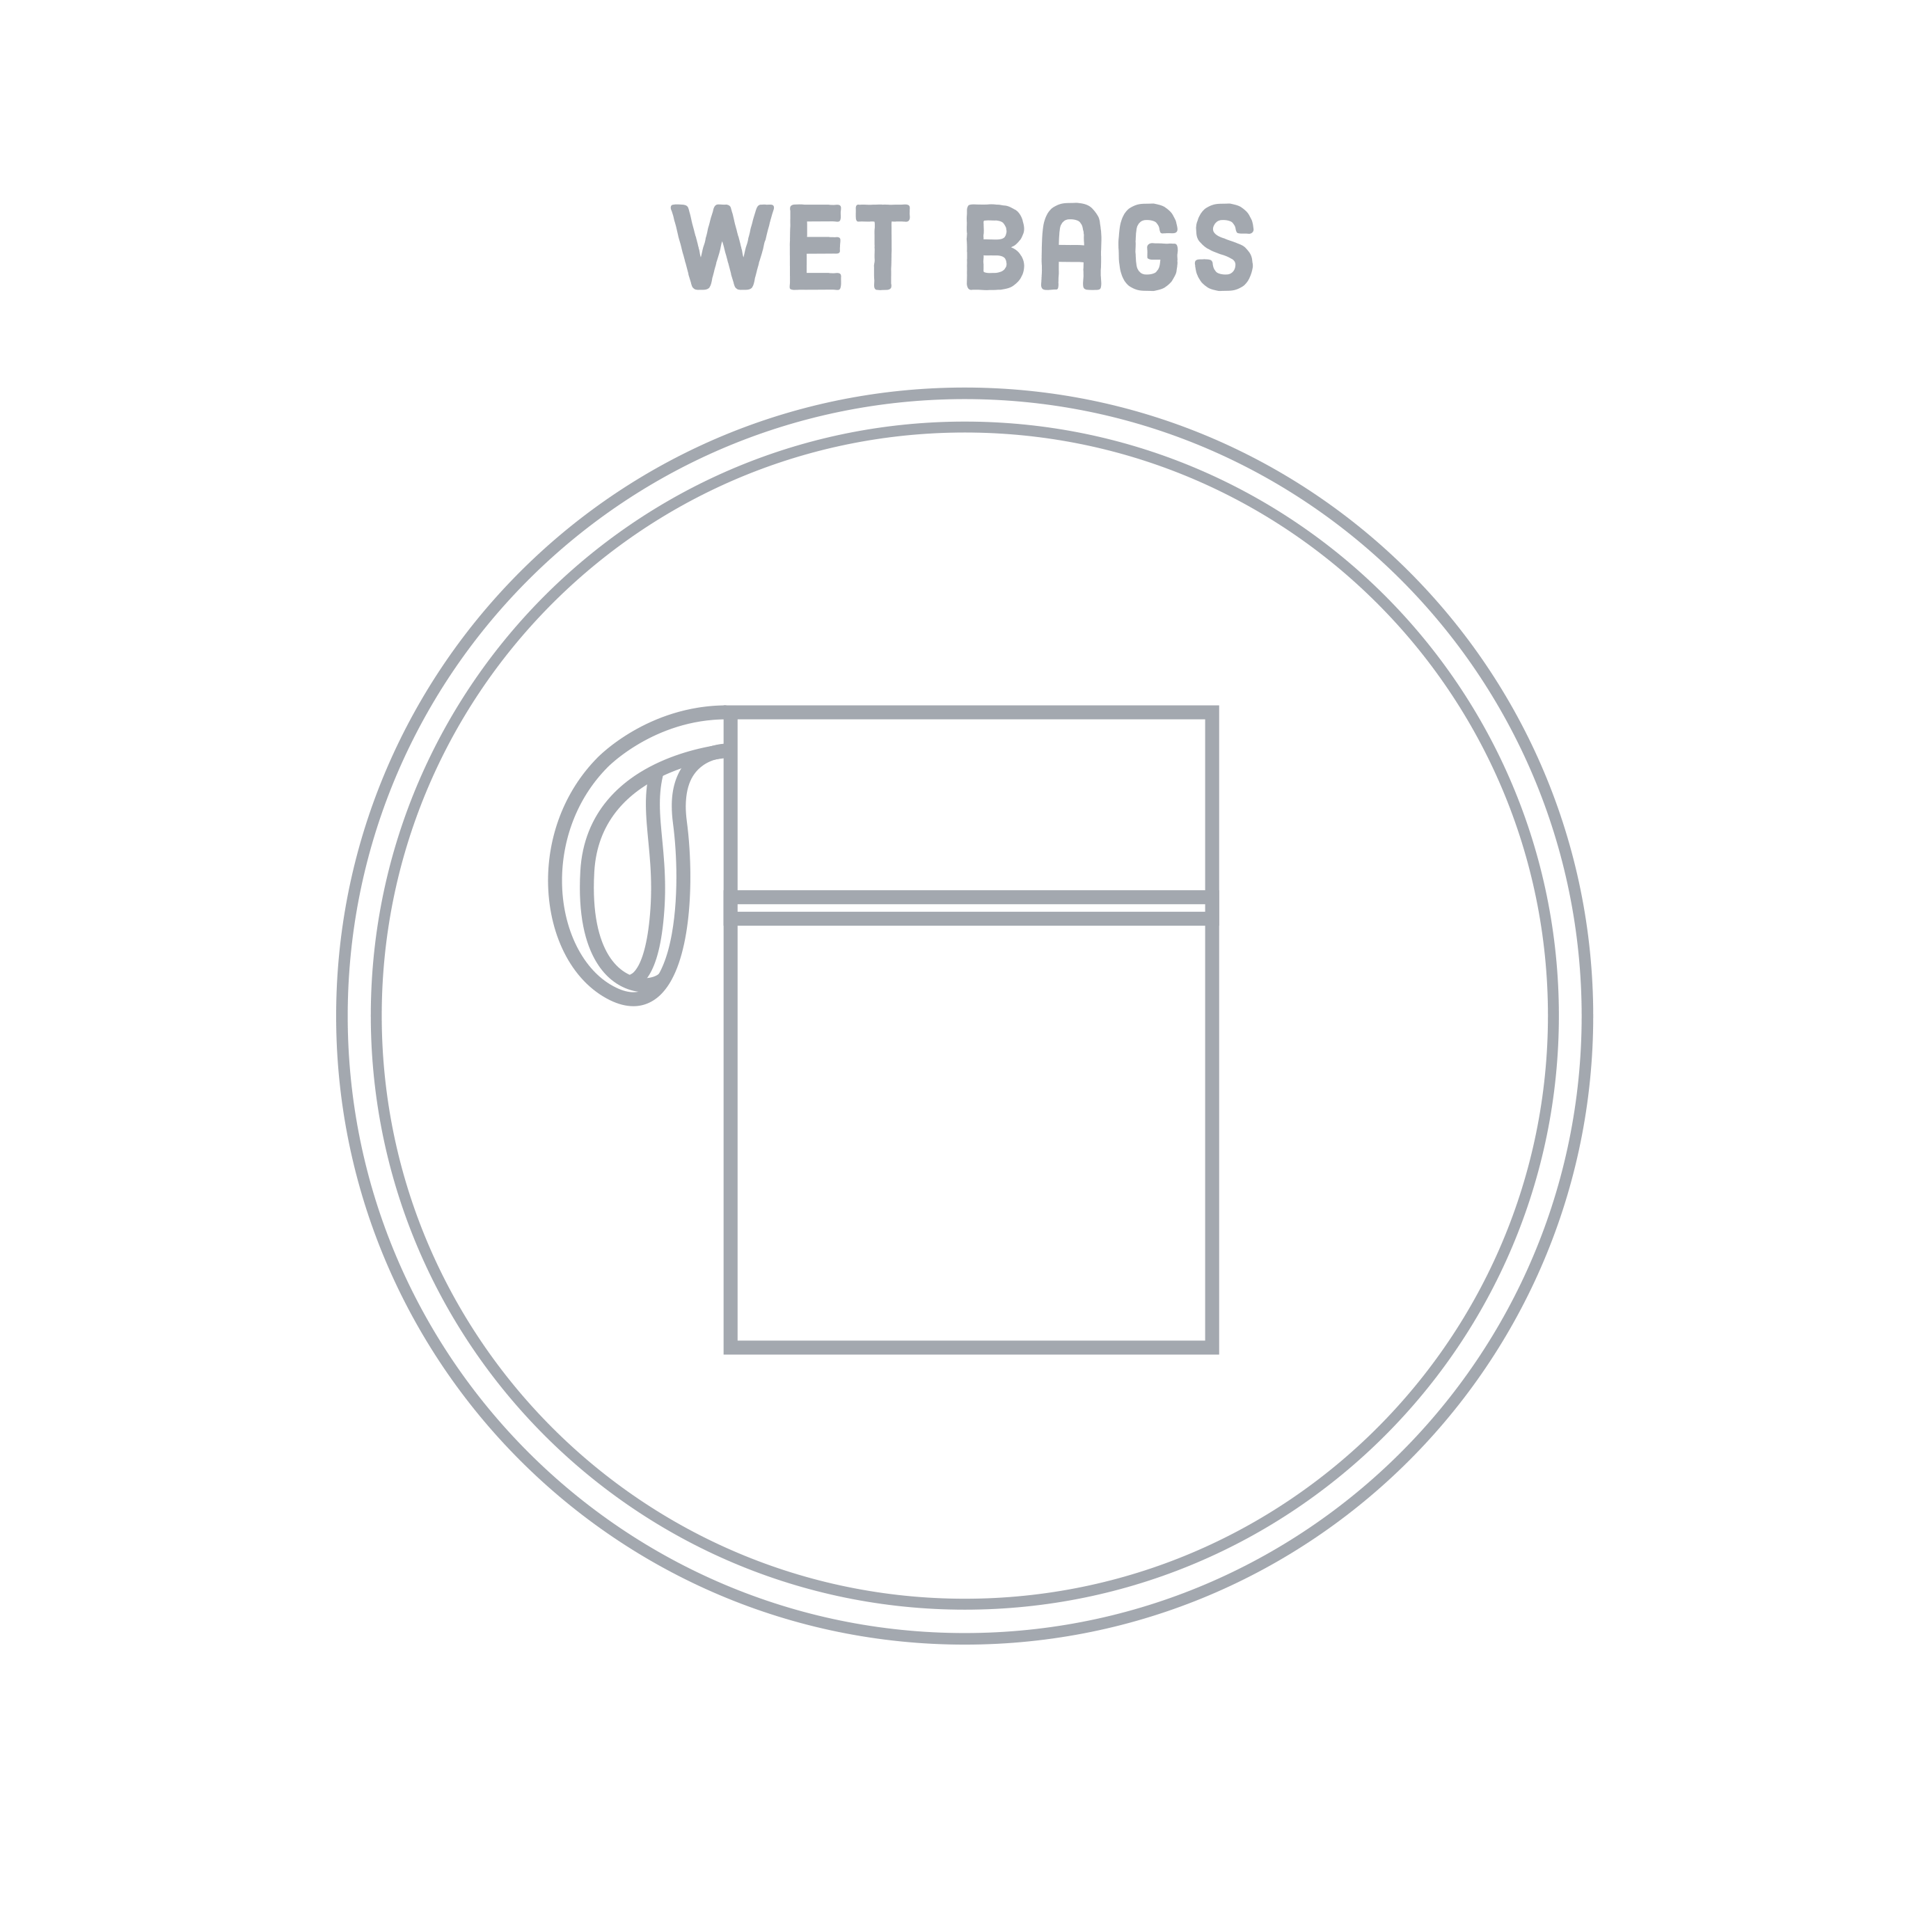 Wet Bags